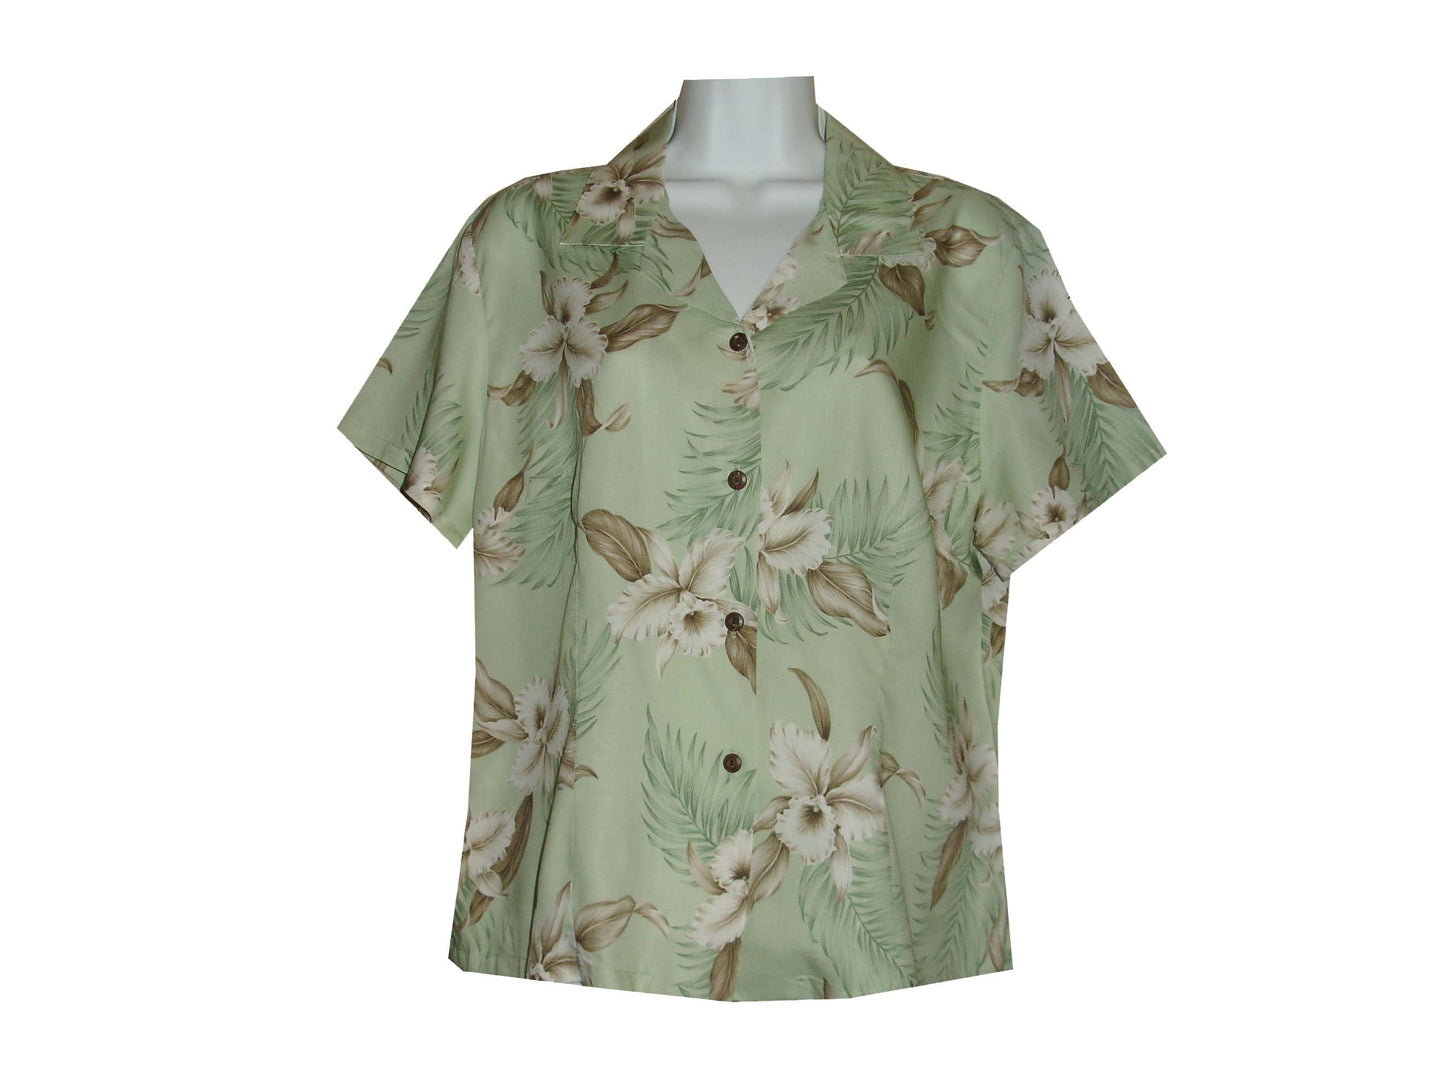 Women Rayon Aloha Shirt Lulumahu Orchid Design